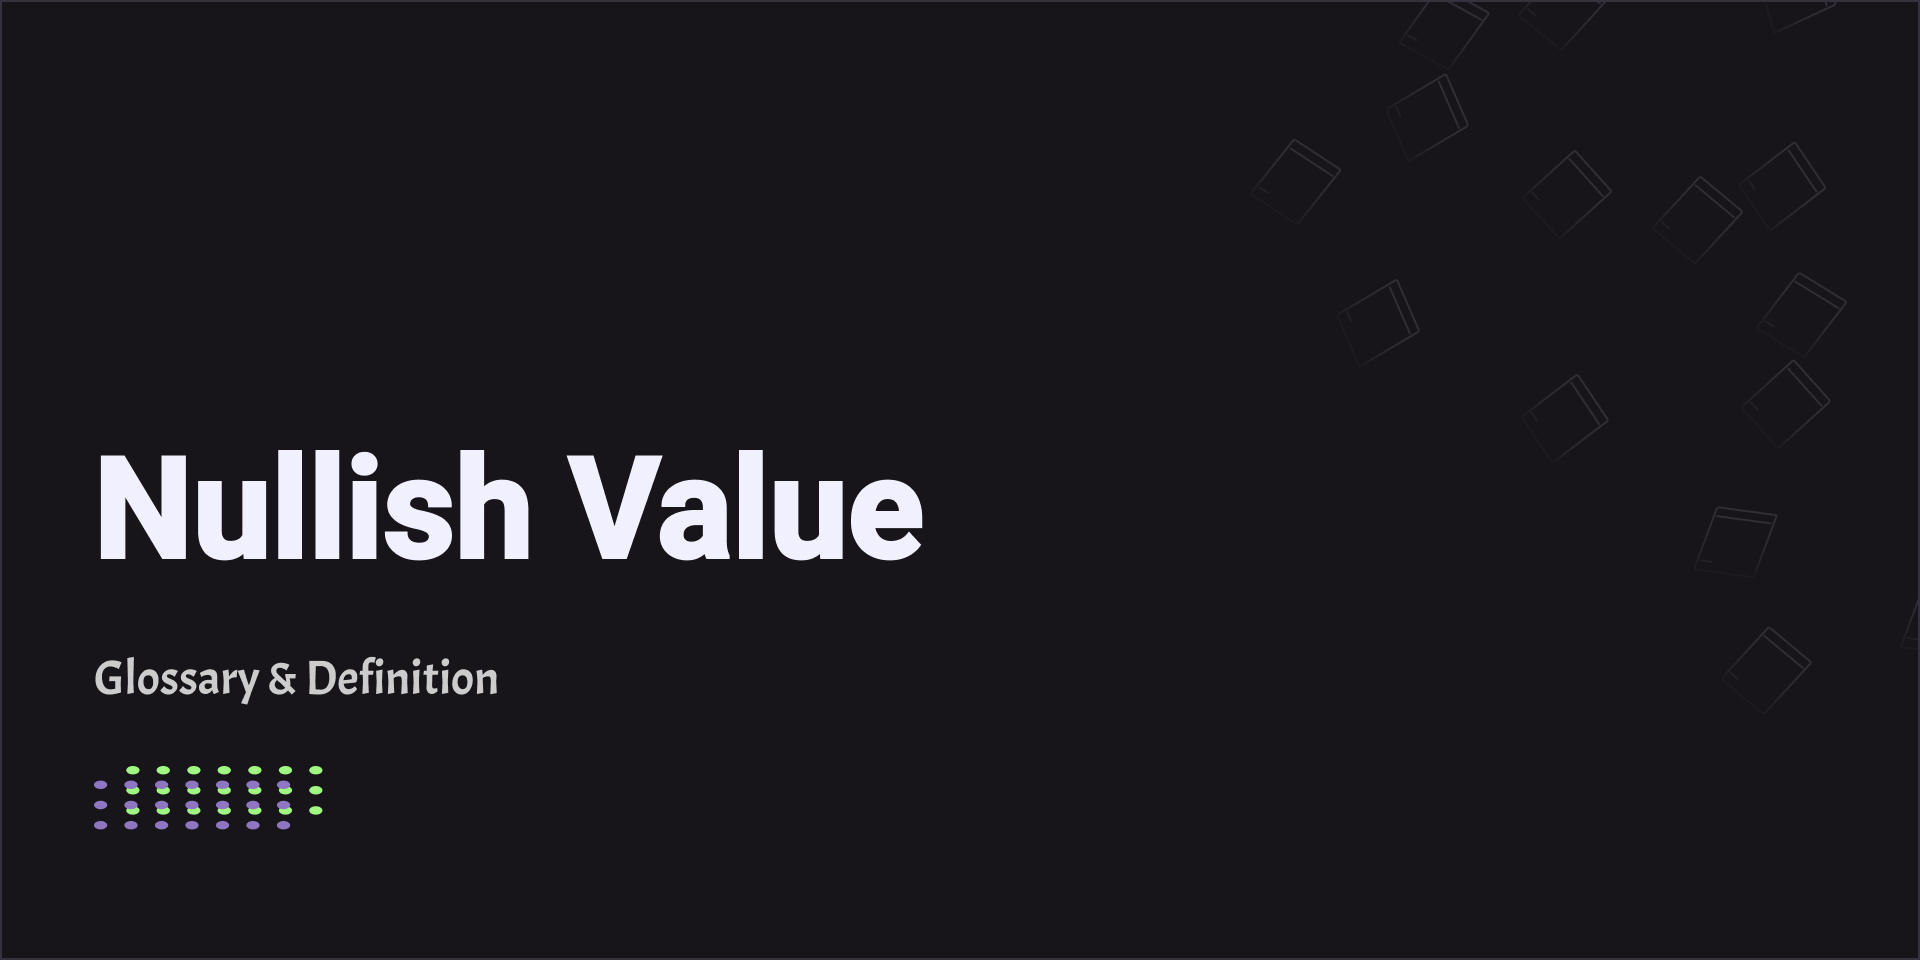 Nullish Value